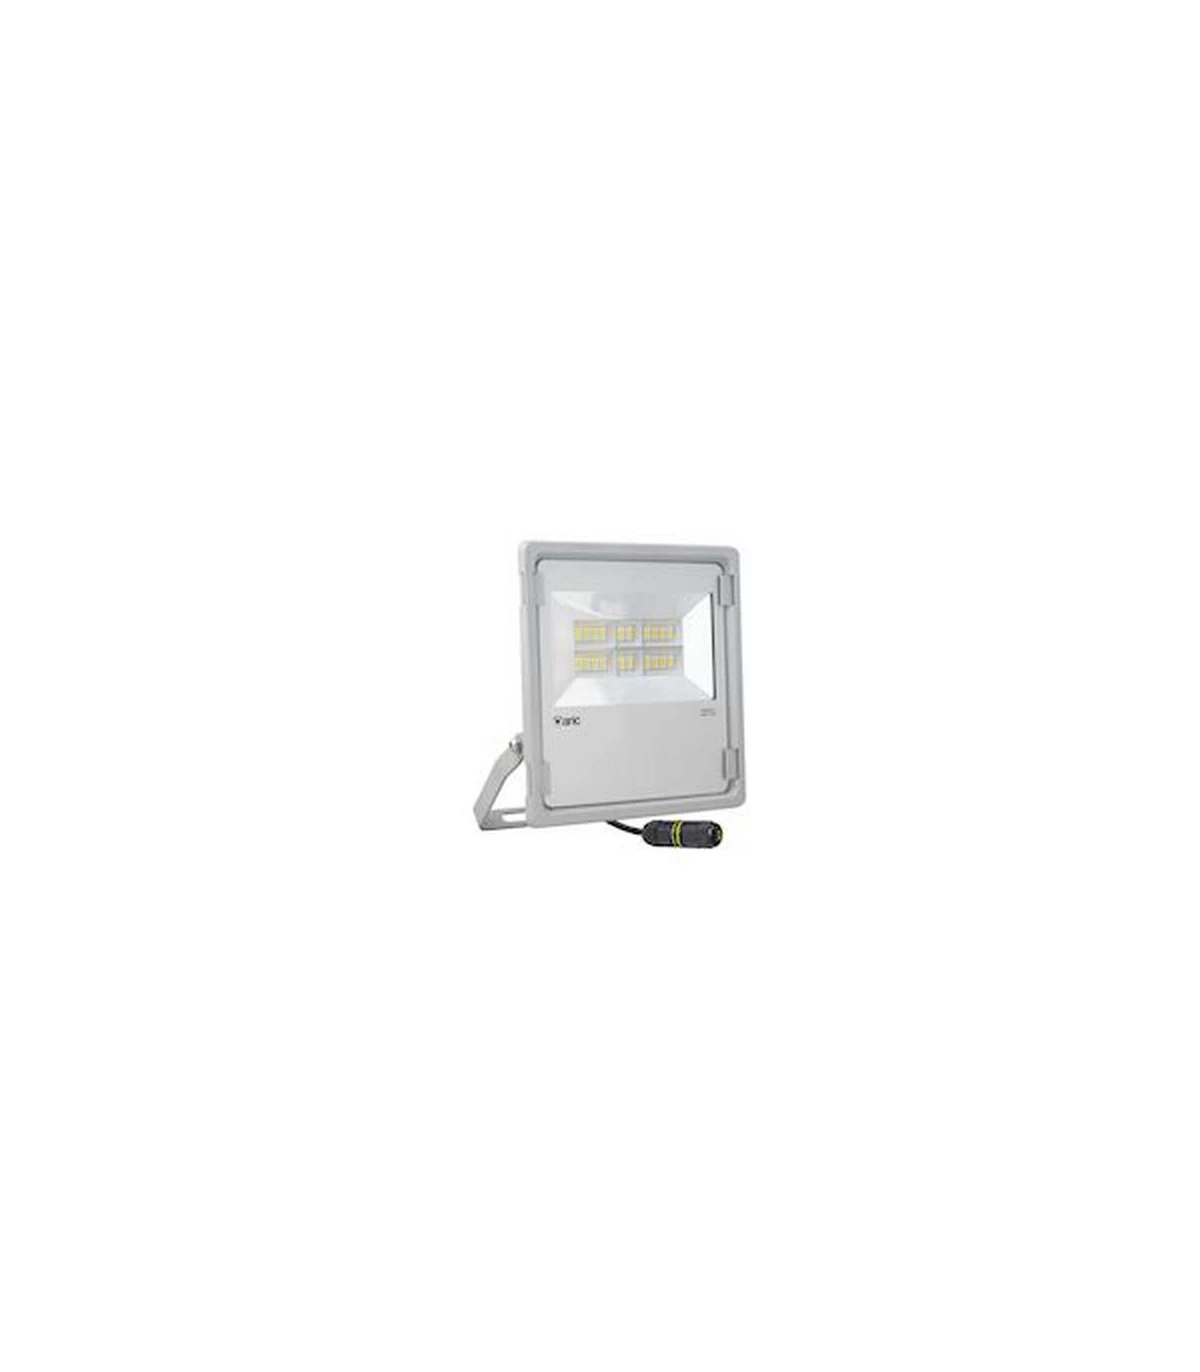 ARIC 50838, Projecteur extérieur gris IP65 LED 100W Blanc froid